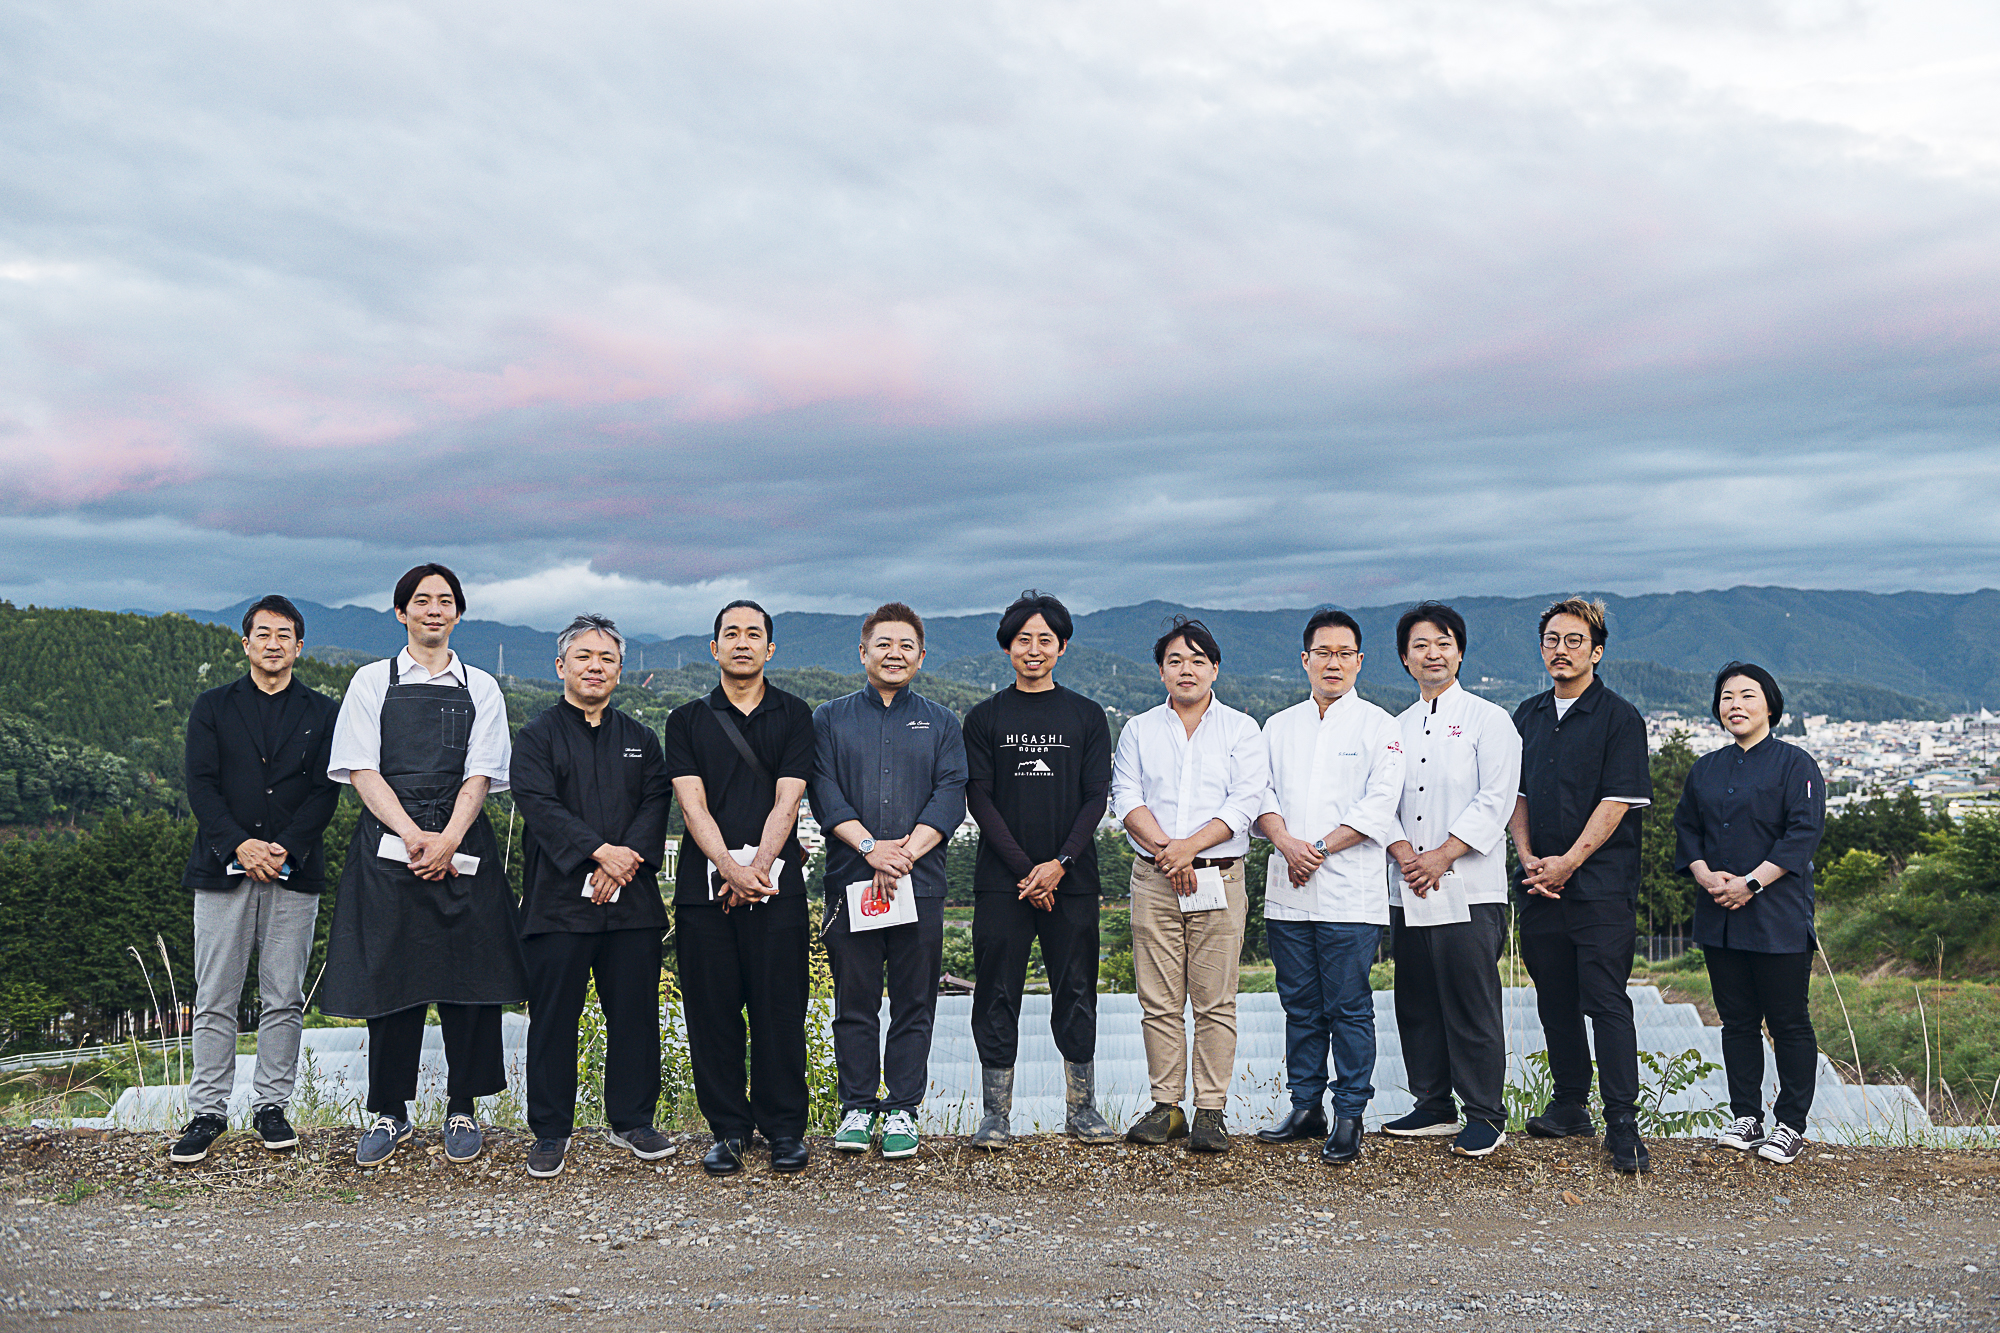 岐阜の食材の魅力に迫る「岐阜県産地訪問 食材見学会」を開催